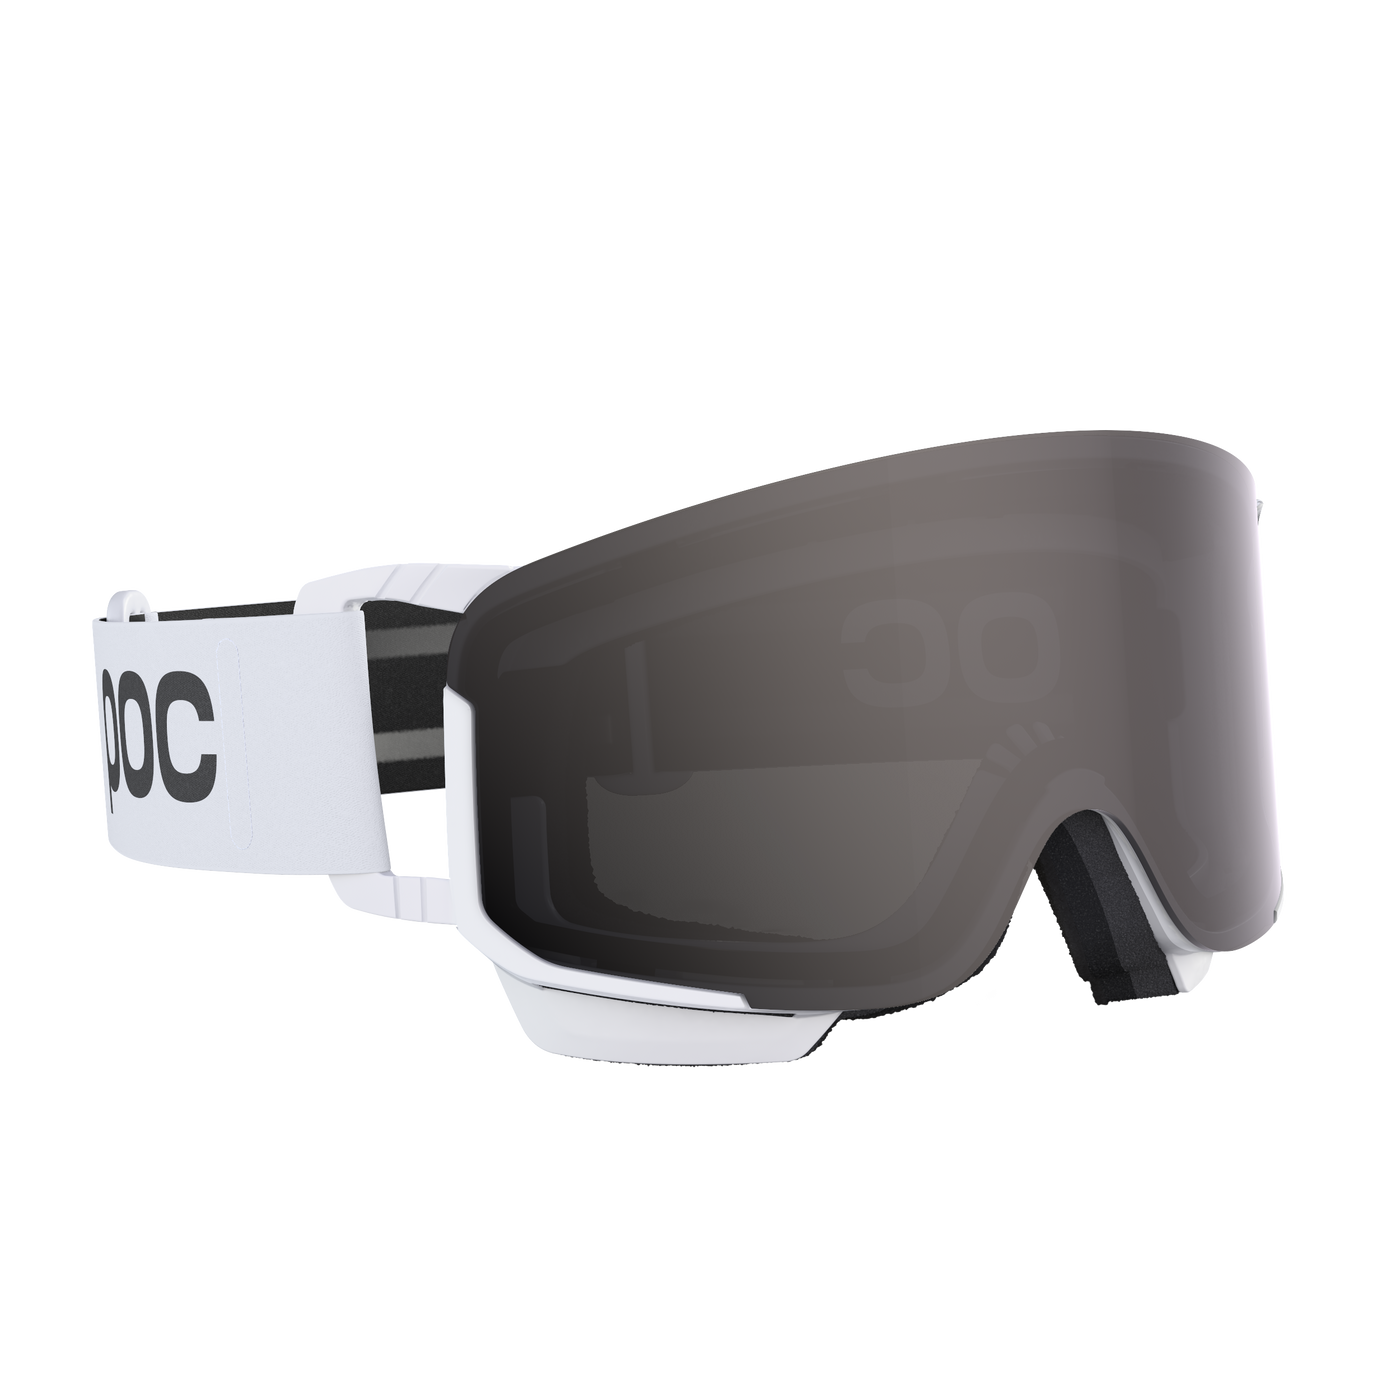 POC Nexal Mid Clarity Ski and Snowboard Goggles GOGGLES POC Hydrogen White/Clarity Define/No Mirror - discontinued  